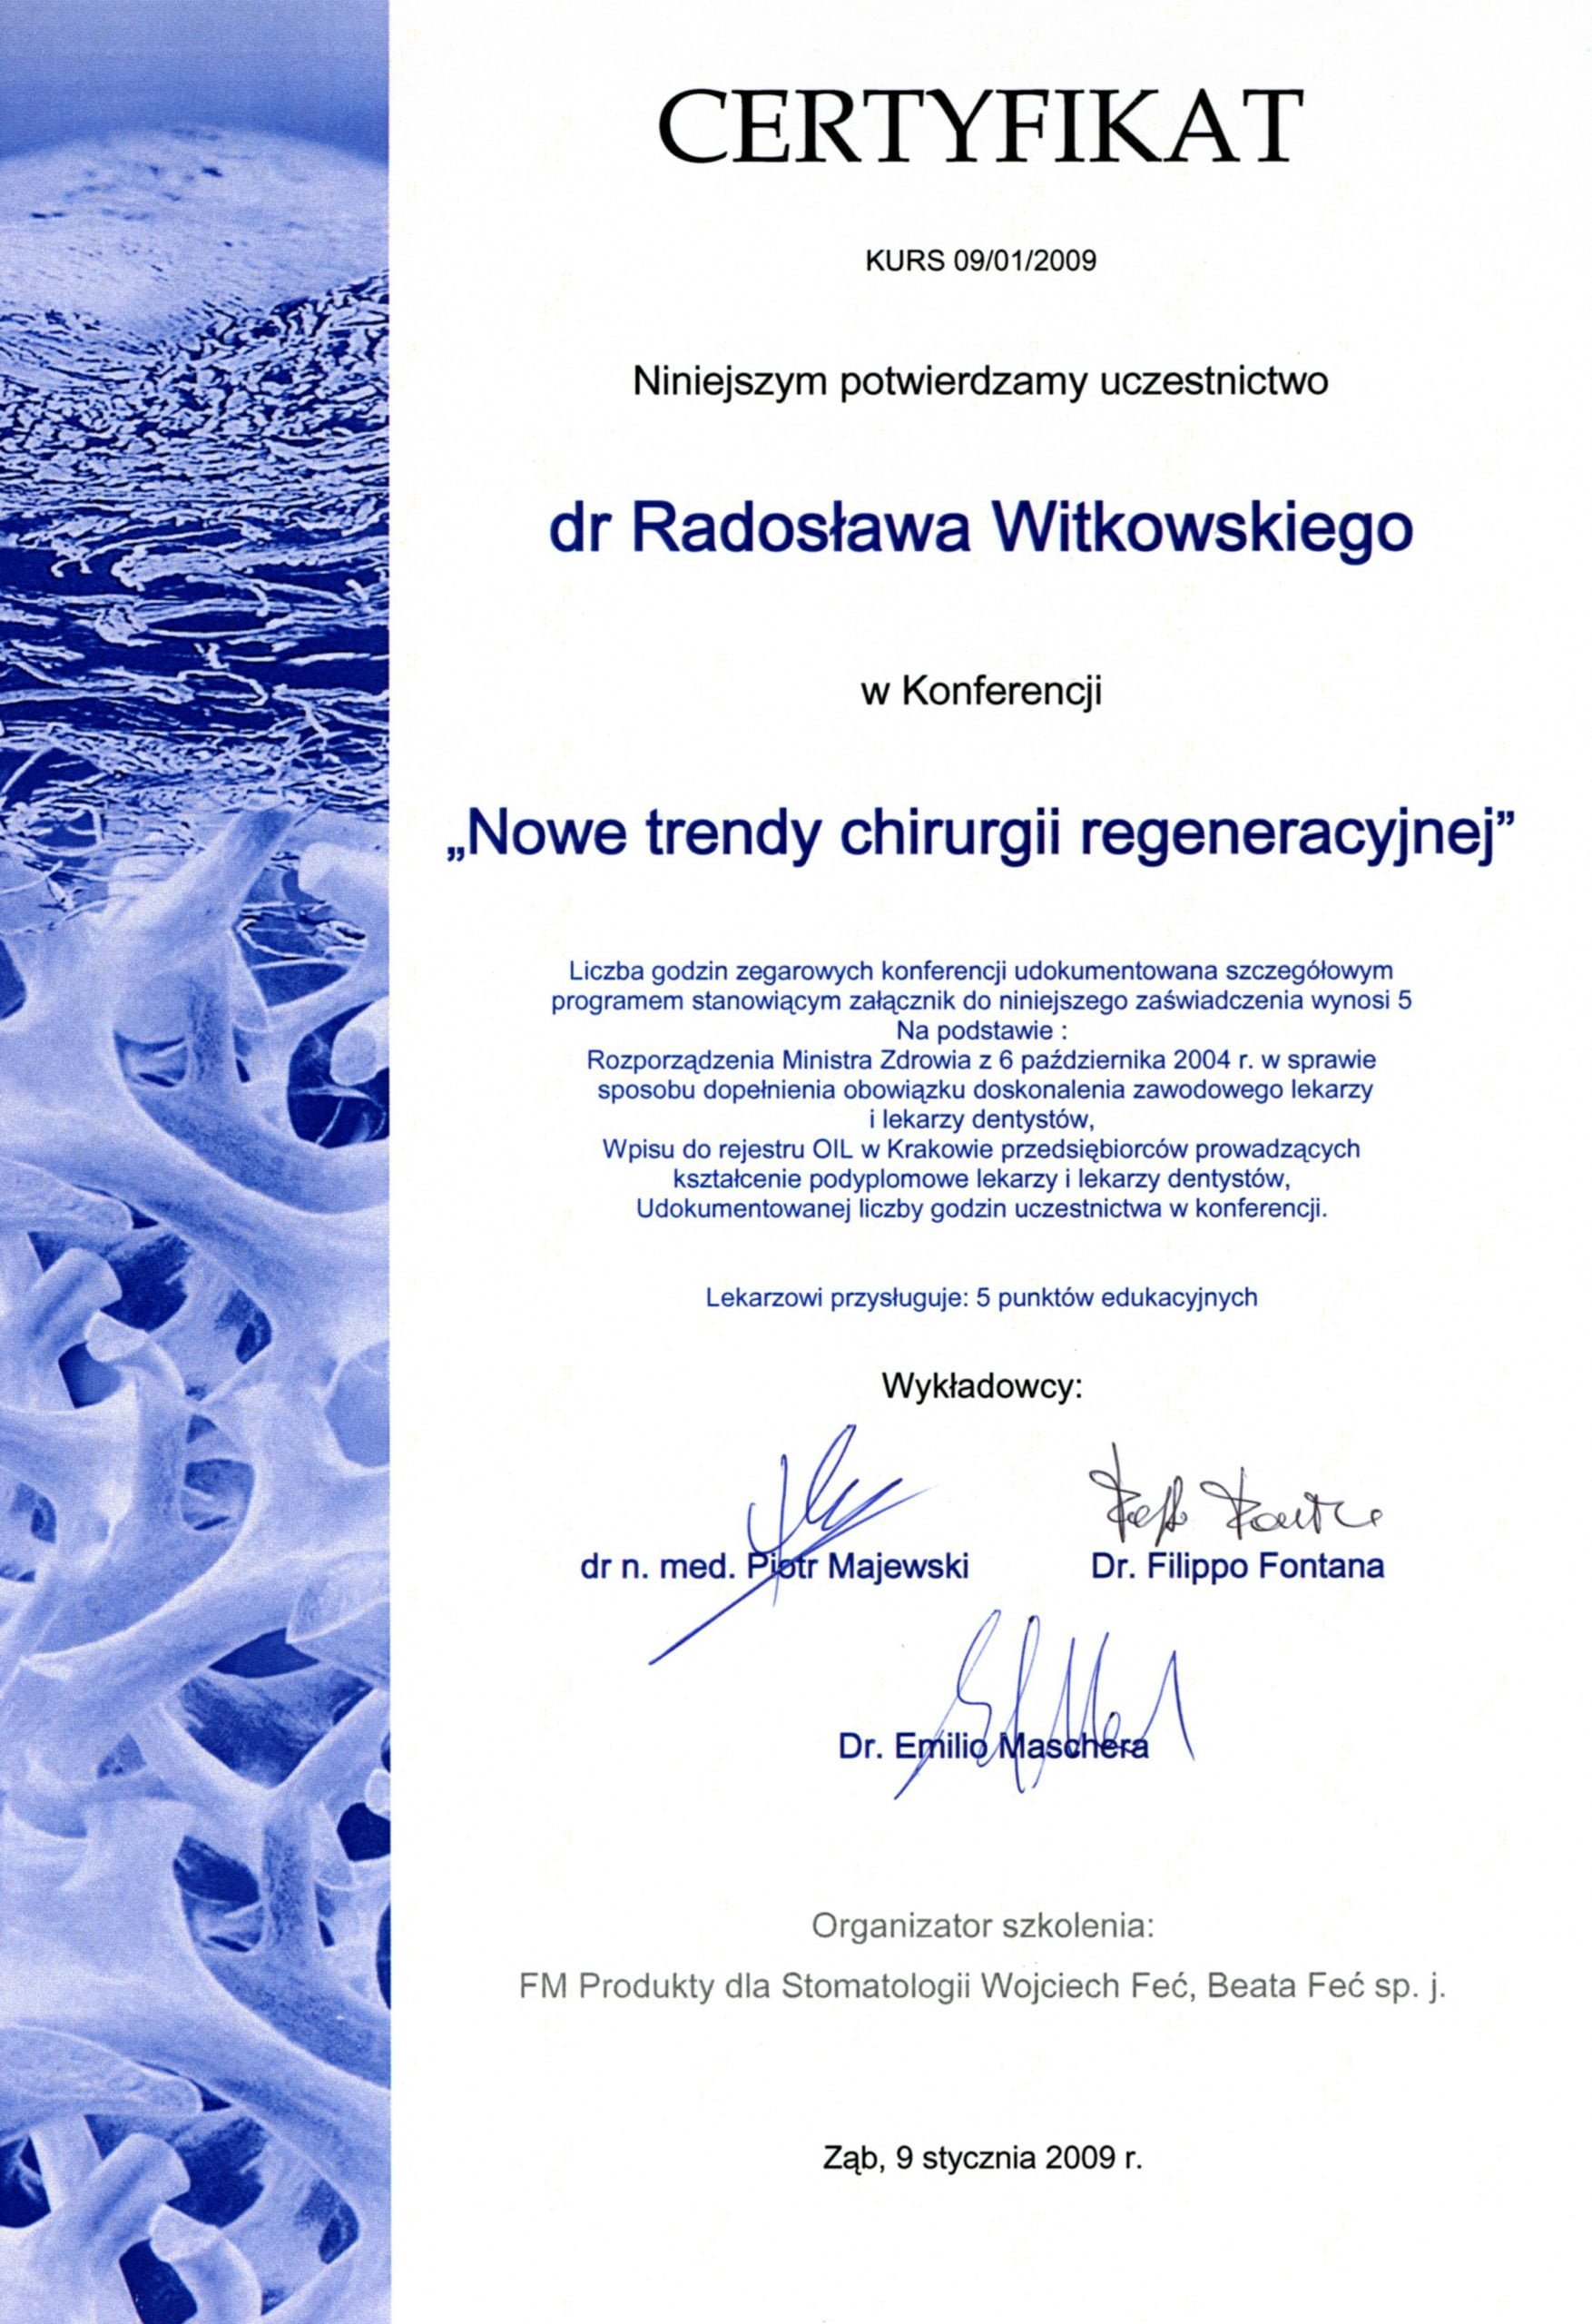 Radosław Witkowski certyfikat 72